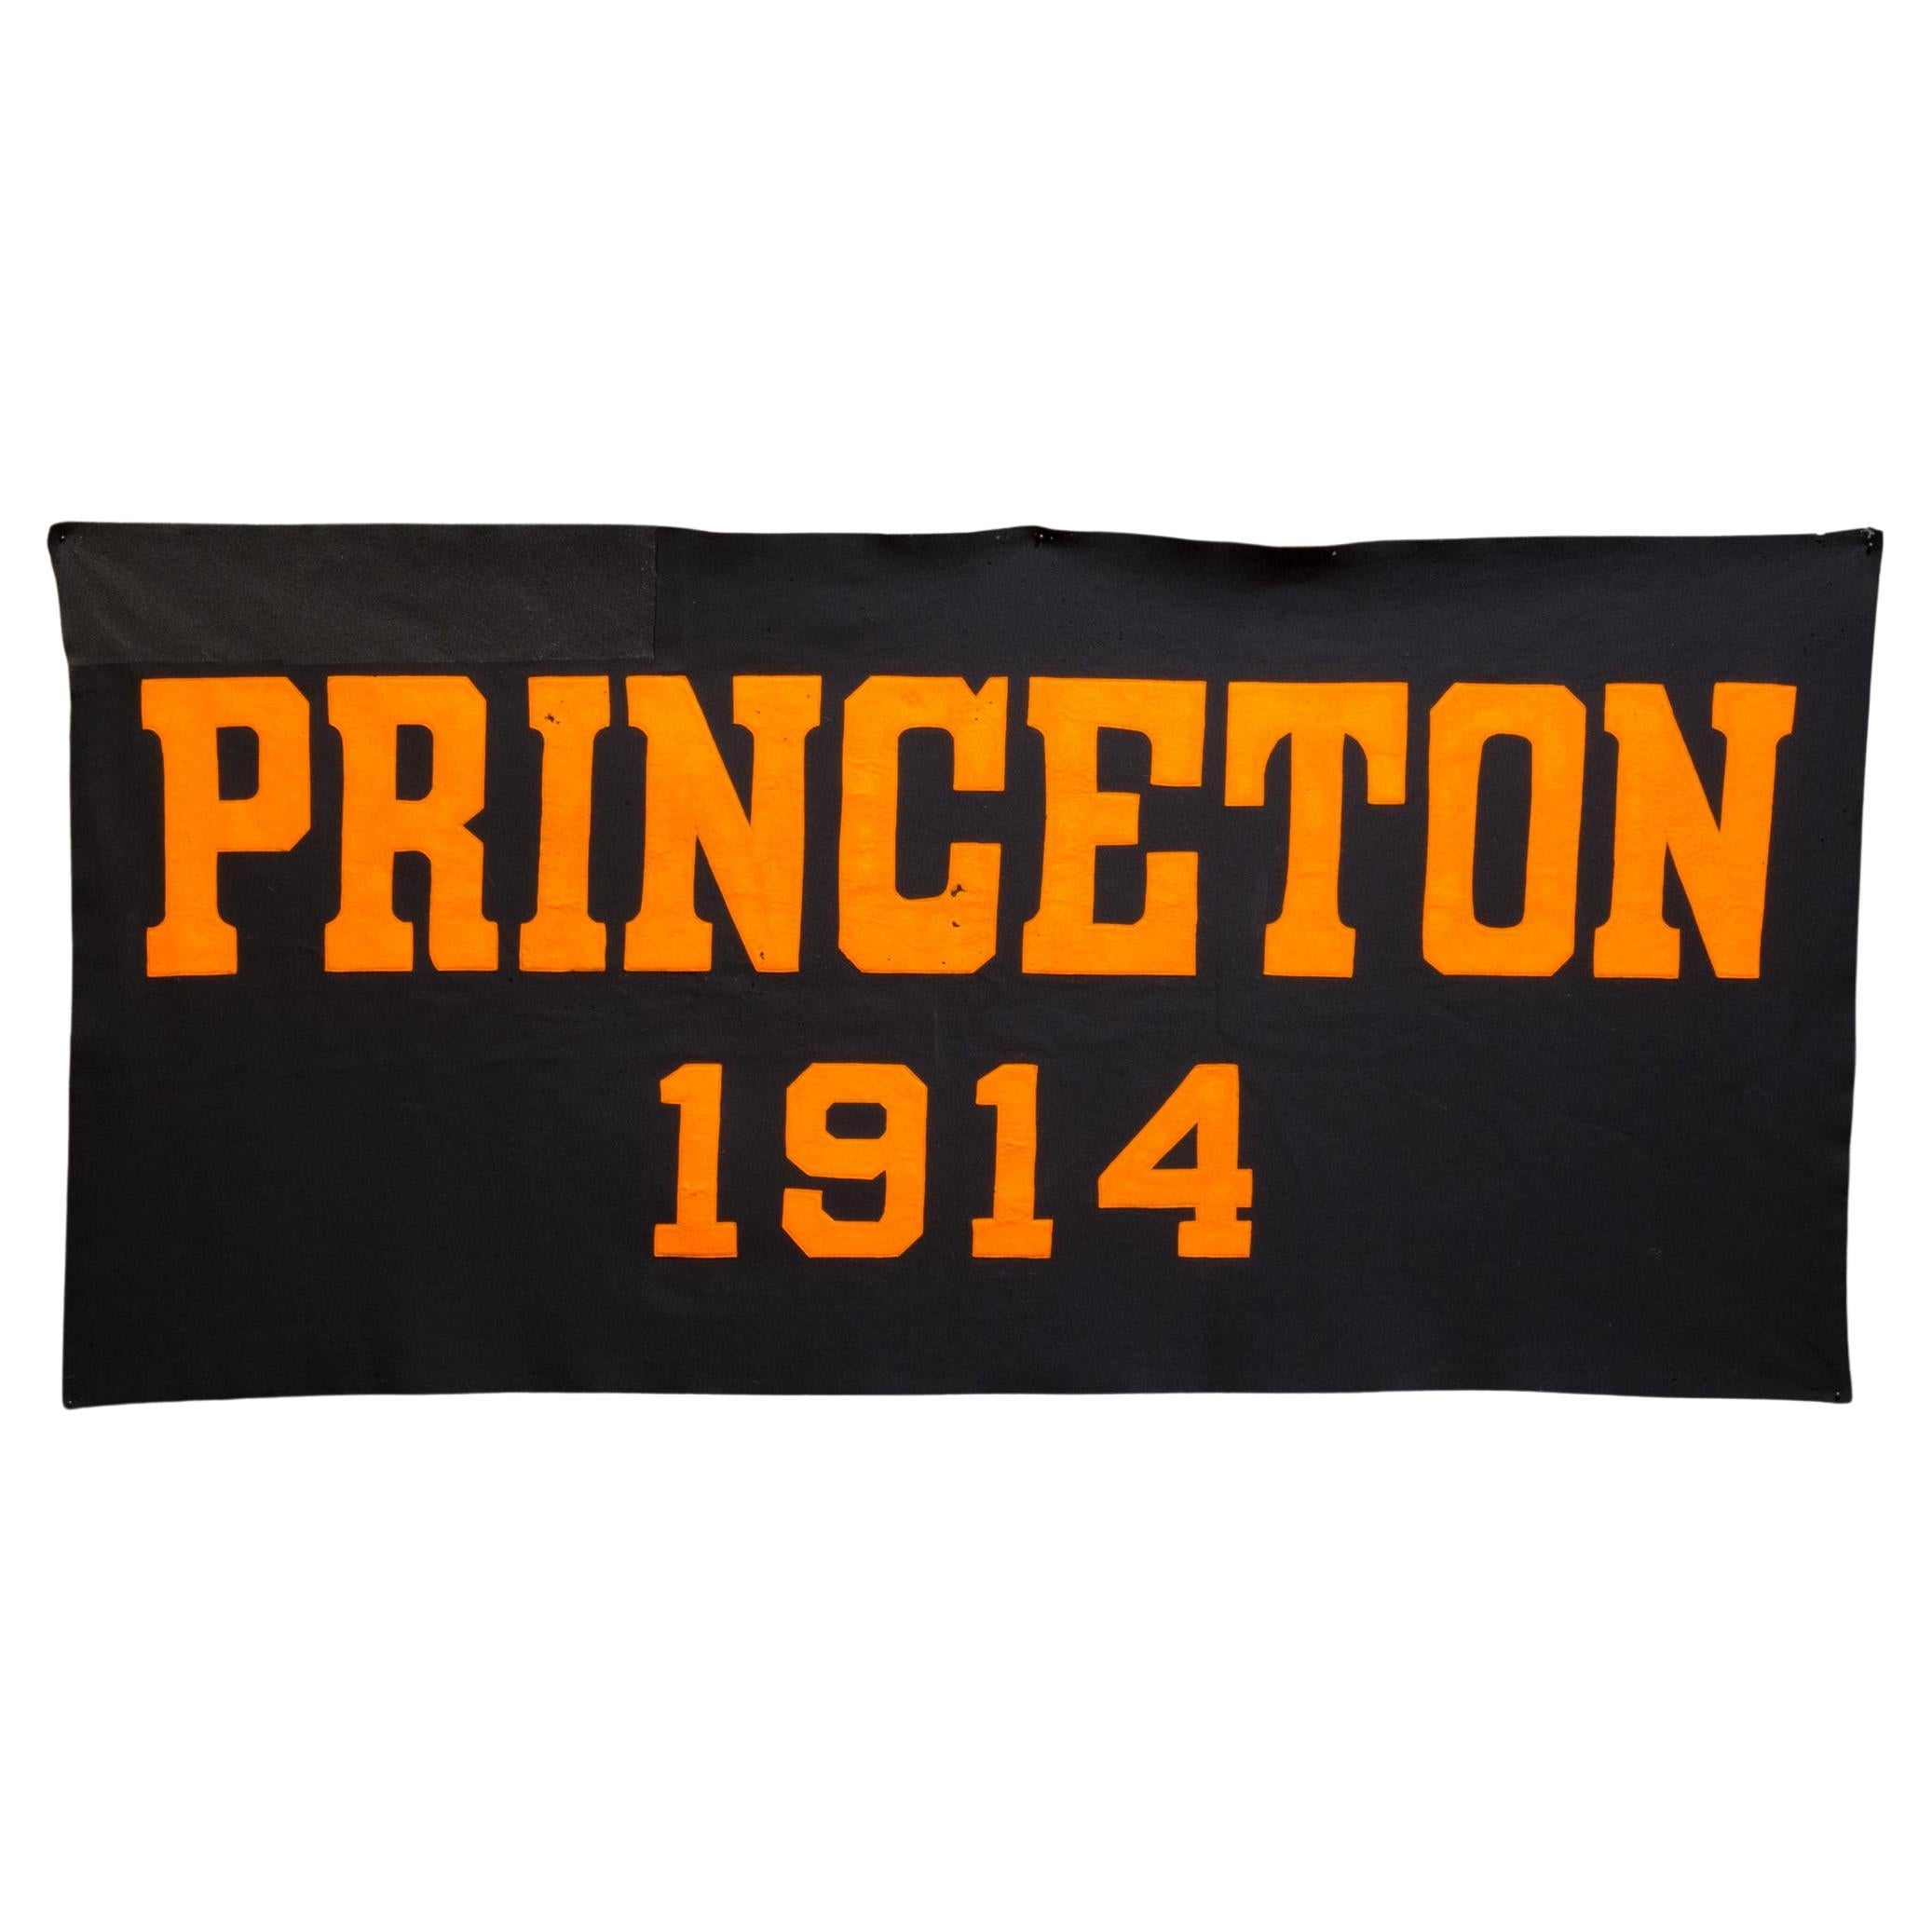 Large Princeton University Banner C.1914  (FREE SHIPPING)